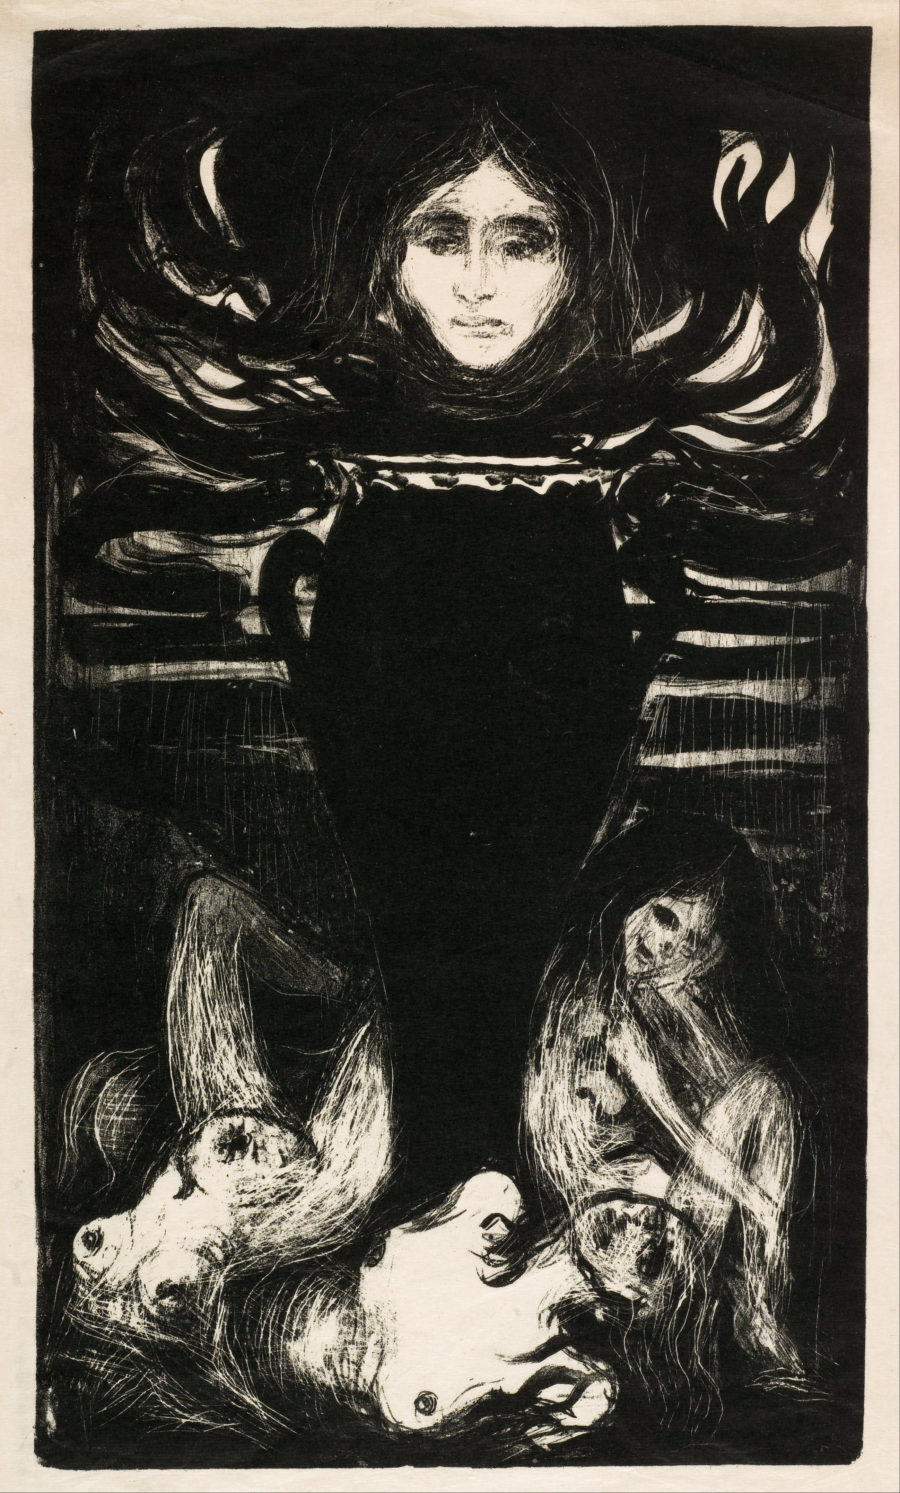 obra Vampire de Edvard Munch